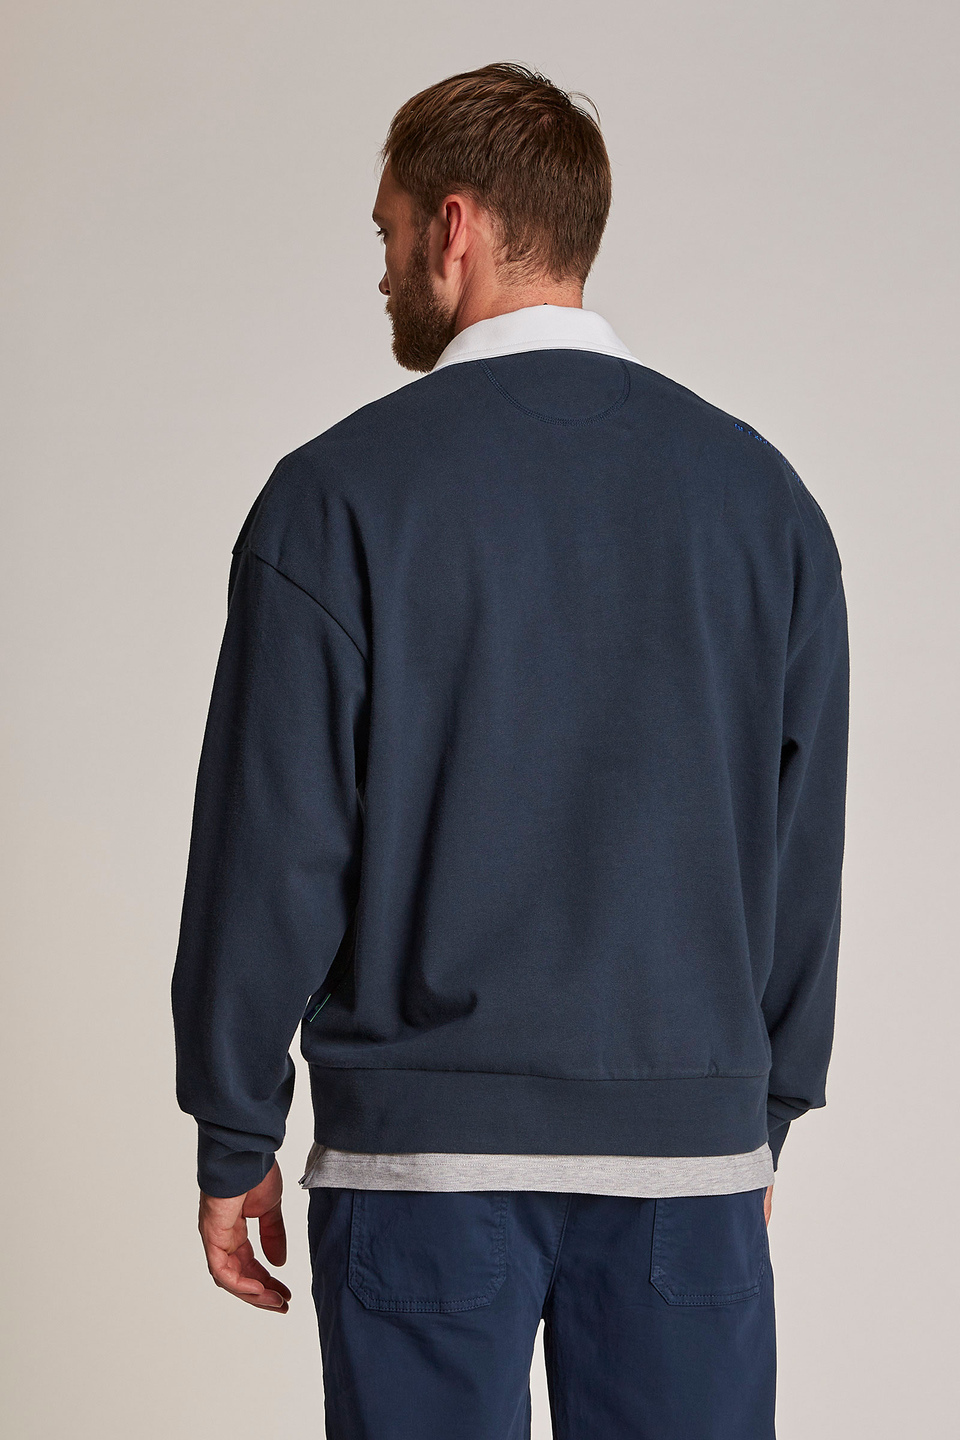 Herren-Sweatshirt aus 100 % Baumwolle mit einem Kragen in Kontrastoptik, oversized Modell | La Martina - Official Online Shop